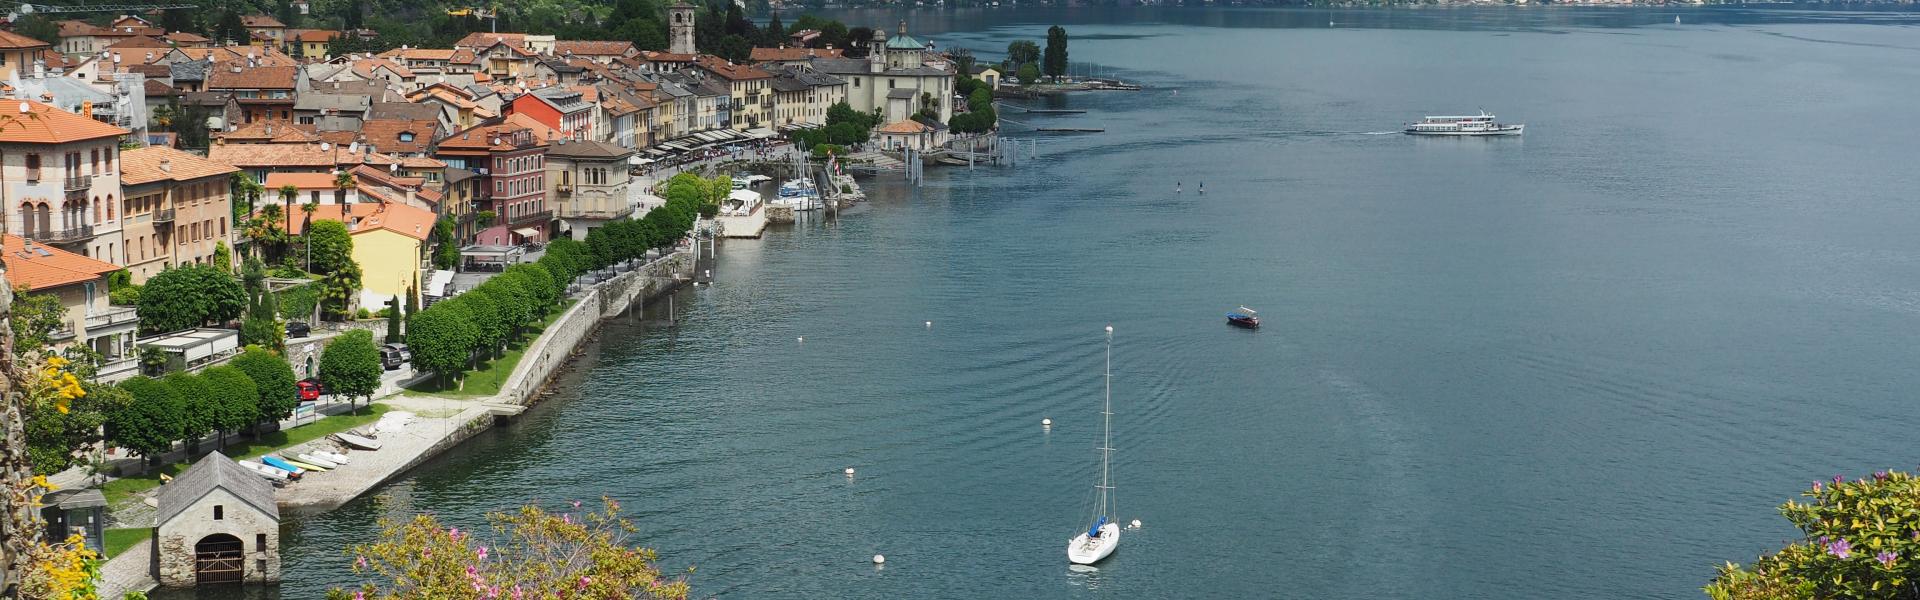 Lago Maggiore Scenic View